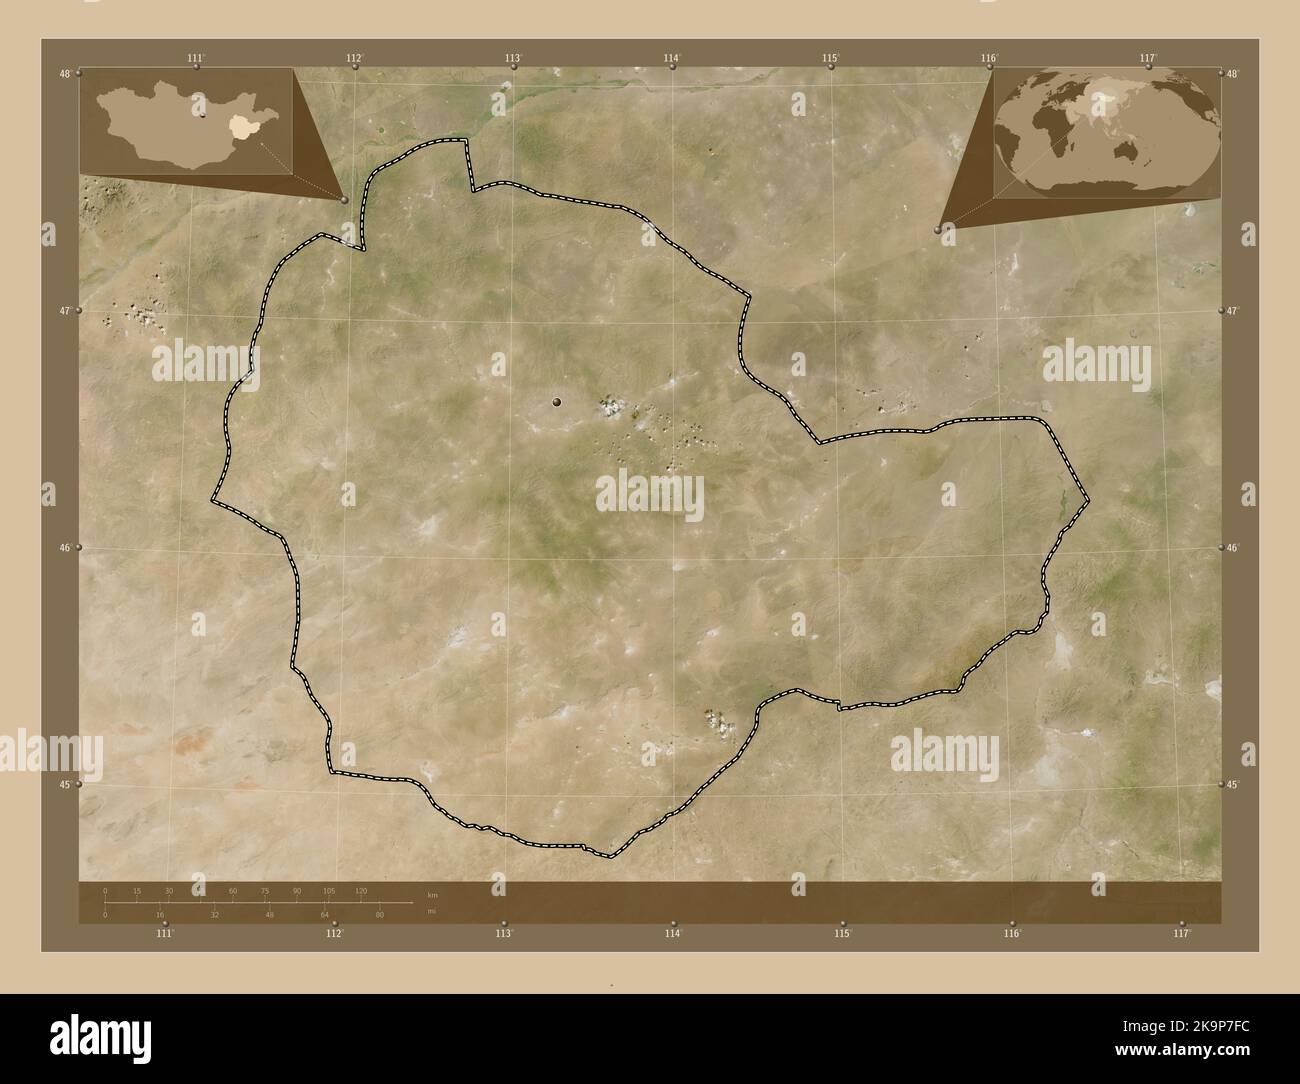 Suhbaatar, province de Mongolie. Carte satellite basse résolution. Lieux des principales villes de la région. Cartes d'emplacement auxiliaire d'angle Banque D'Images